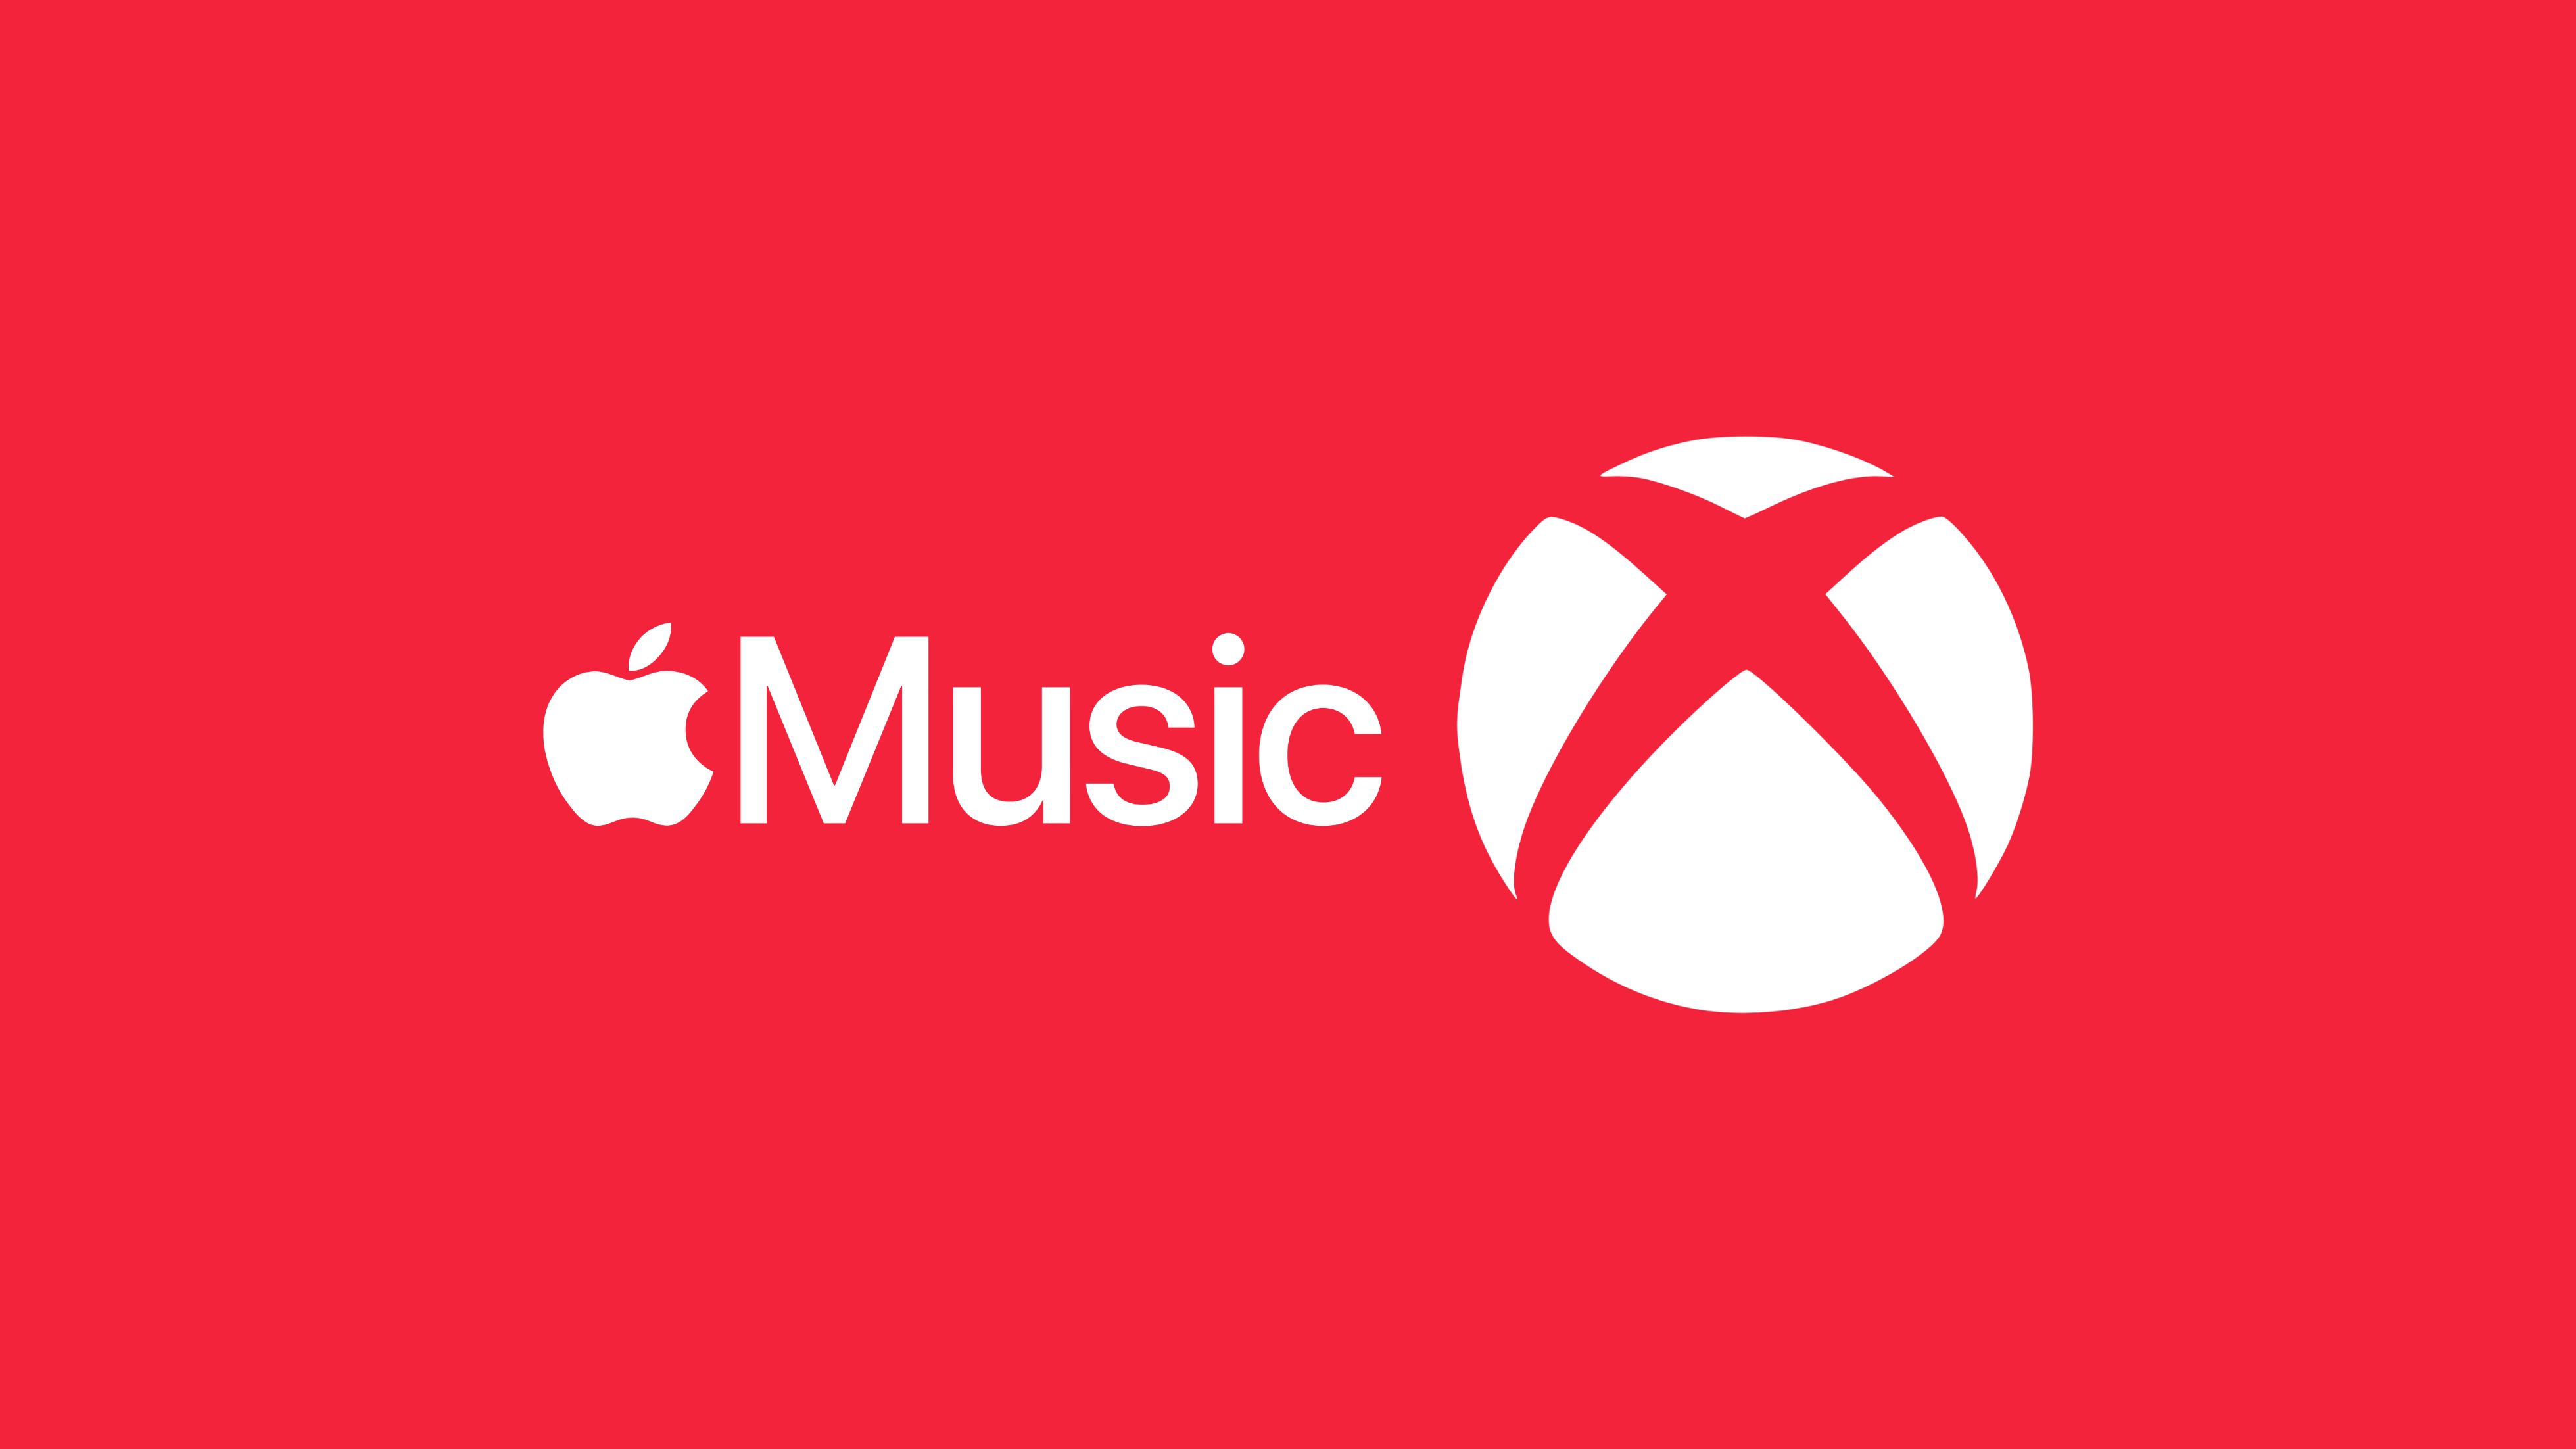 Os melhores aplicativos para ouvir música no Xbox enquanto você